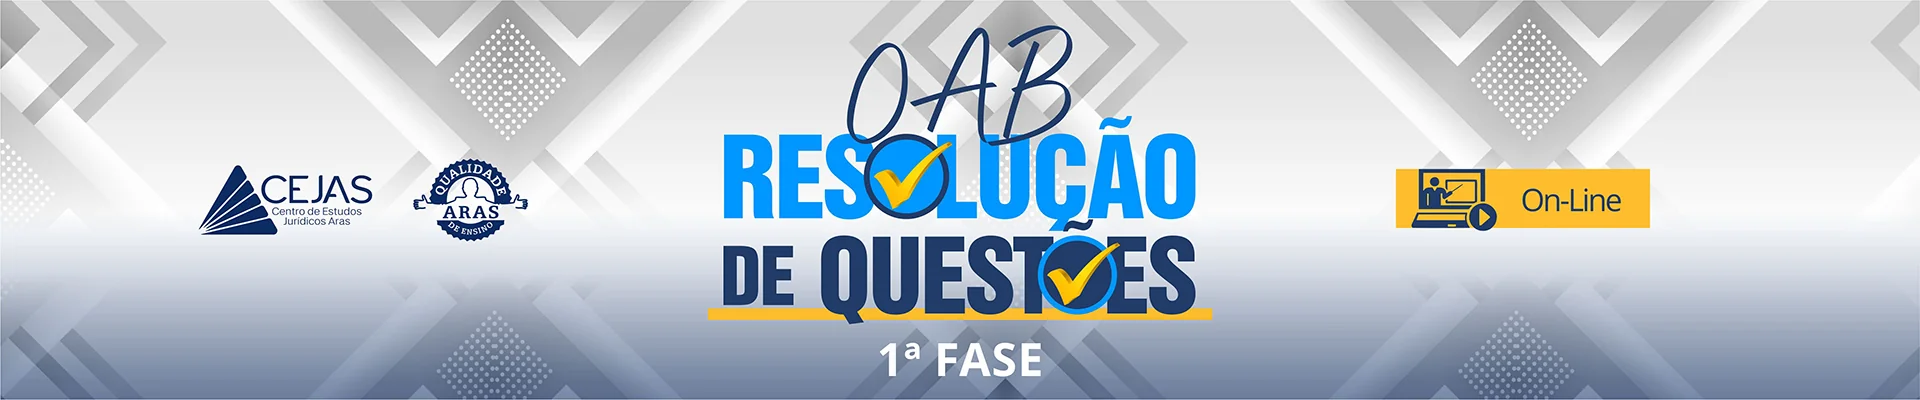 OAB Resolução de Questões - 1ª Fase - Online